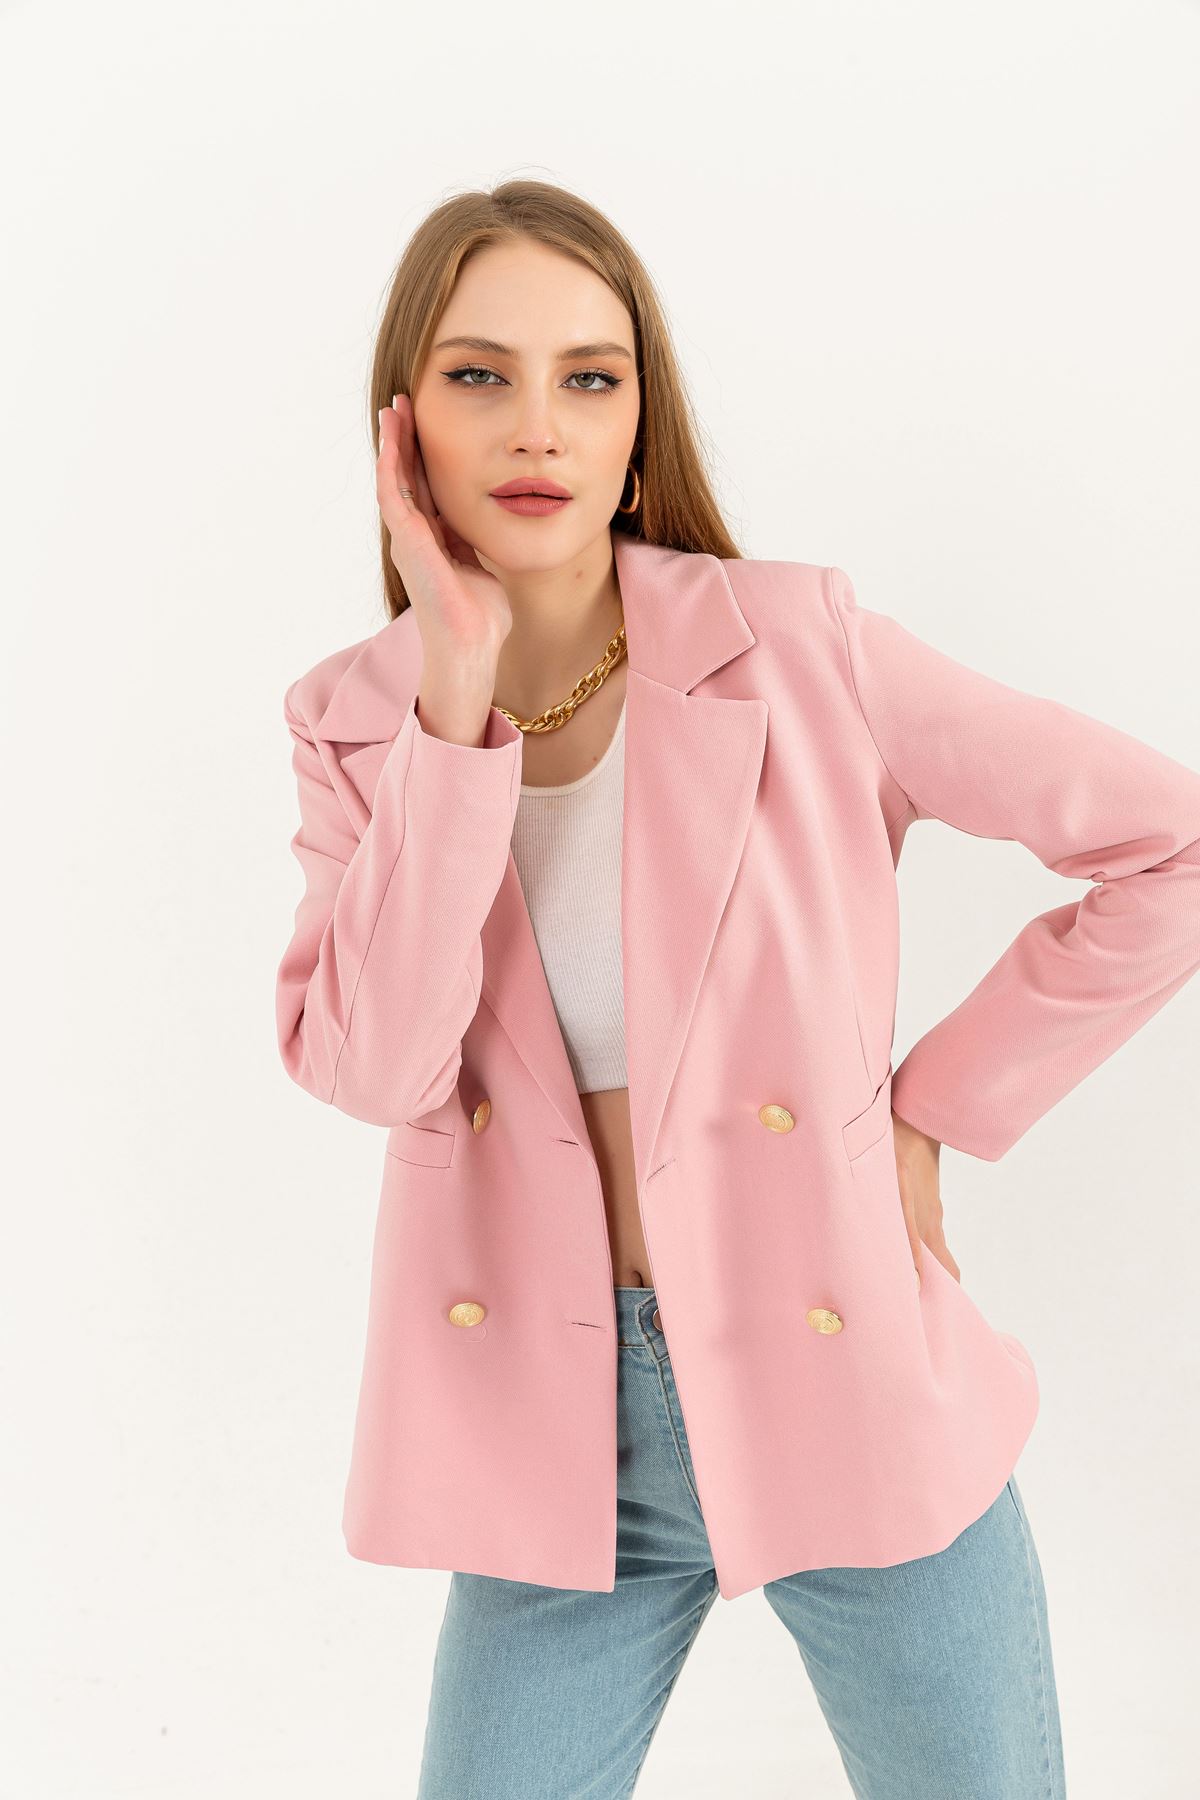 Atlas Fabric Long Sleeve Hip Height Women Blazzer Jacket-Light Pink